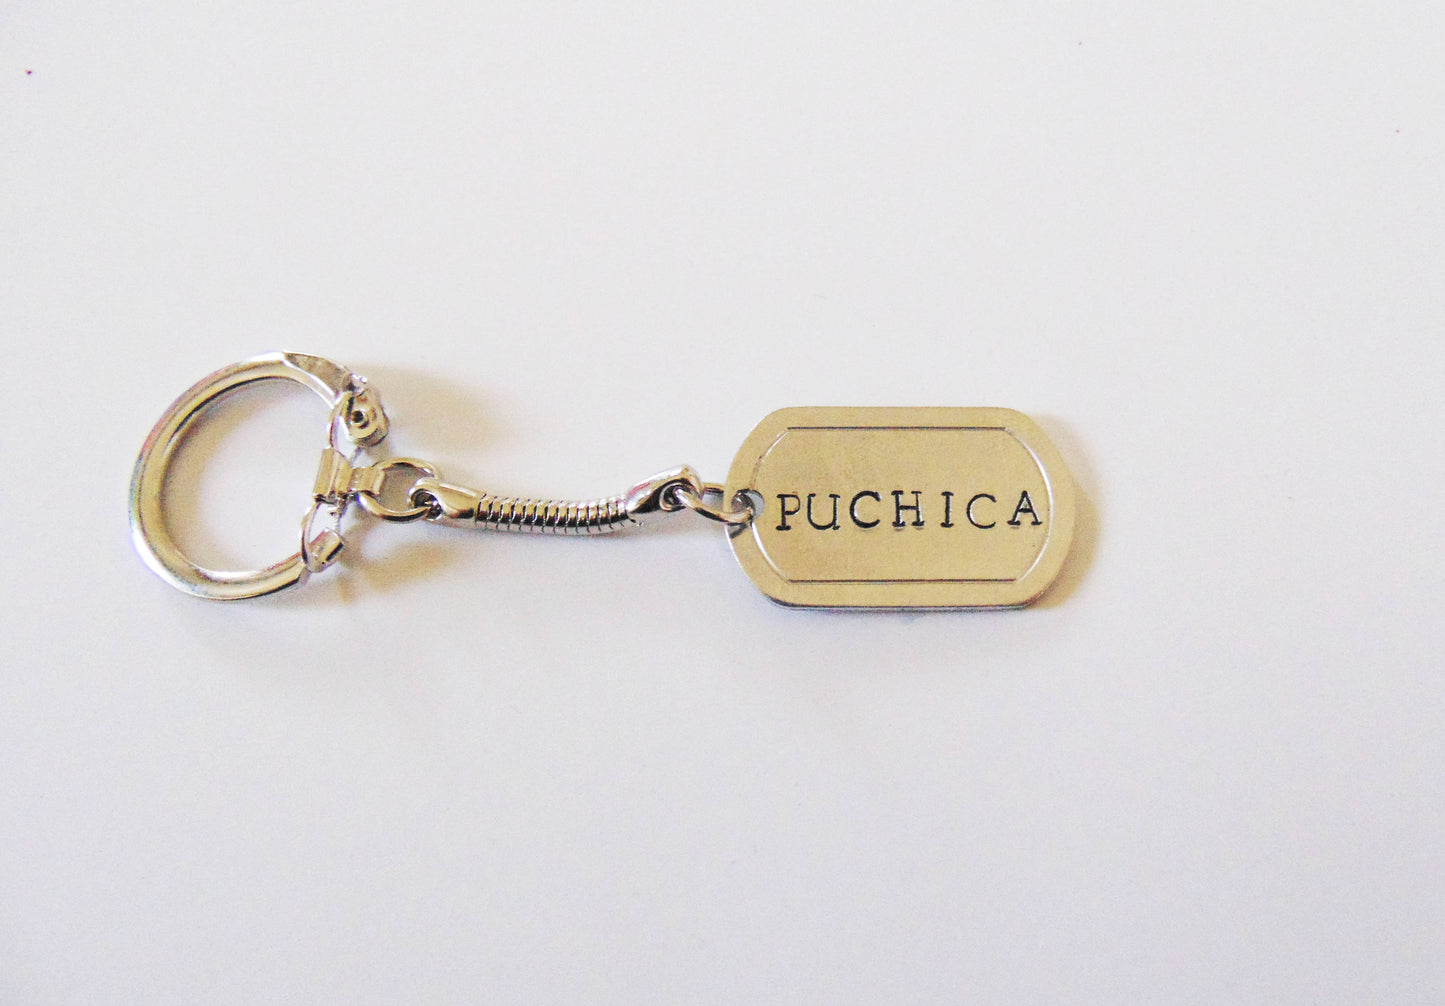 Puchica keychain